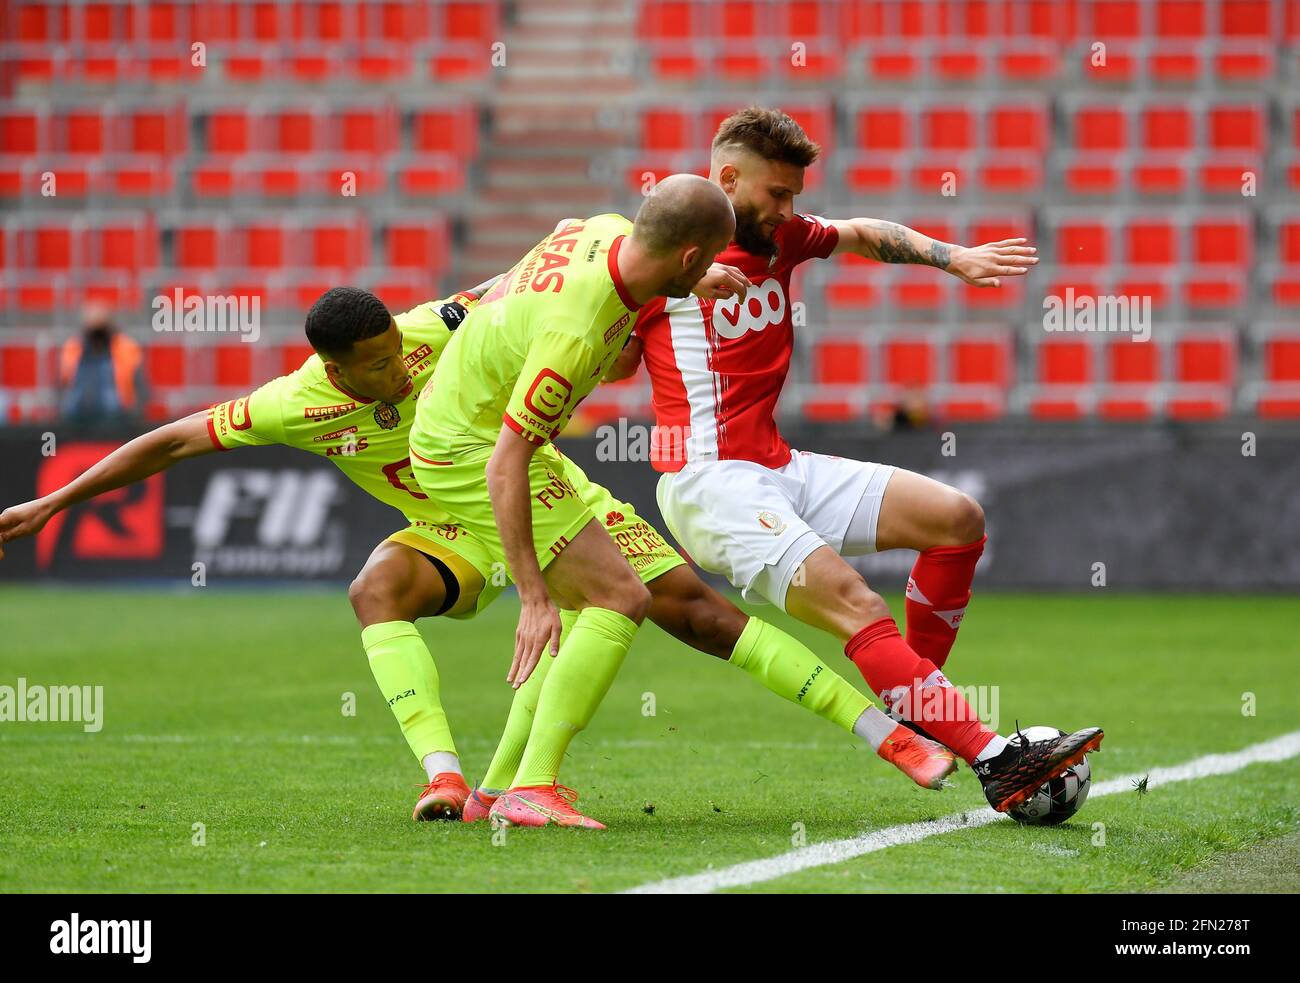 L'Aster Vranckx di Mechelen e Nicolas Gavory di Standard combattono per la palla durante una partita di calcio tra Standard de Liege e KV Mechelen, giovedì 13 Foto Stock